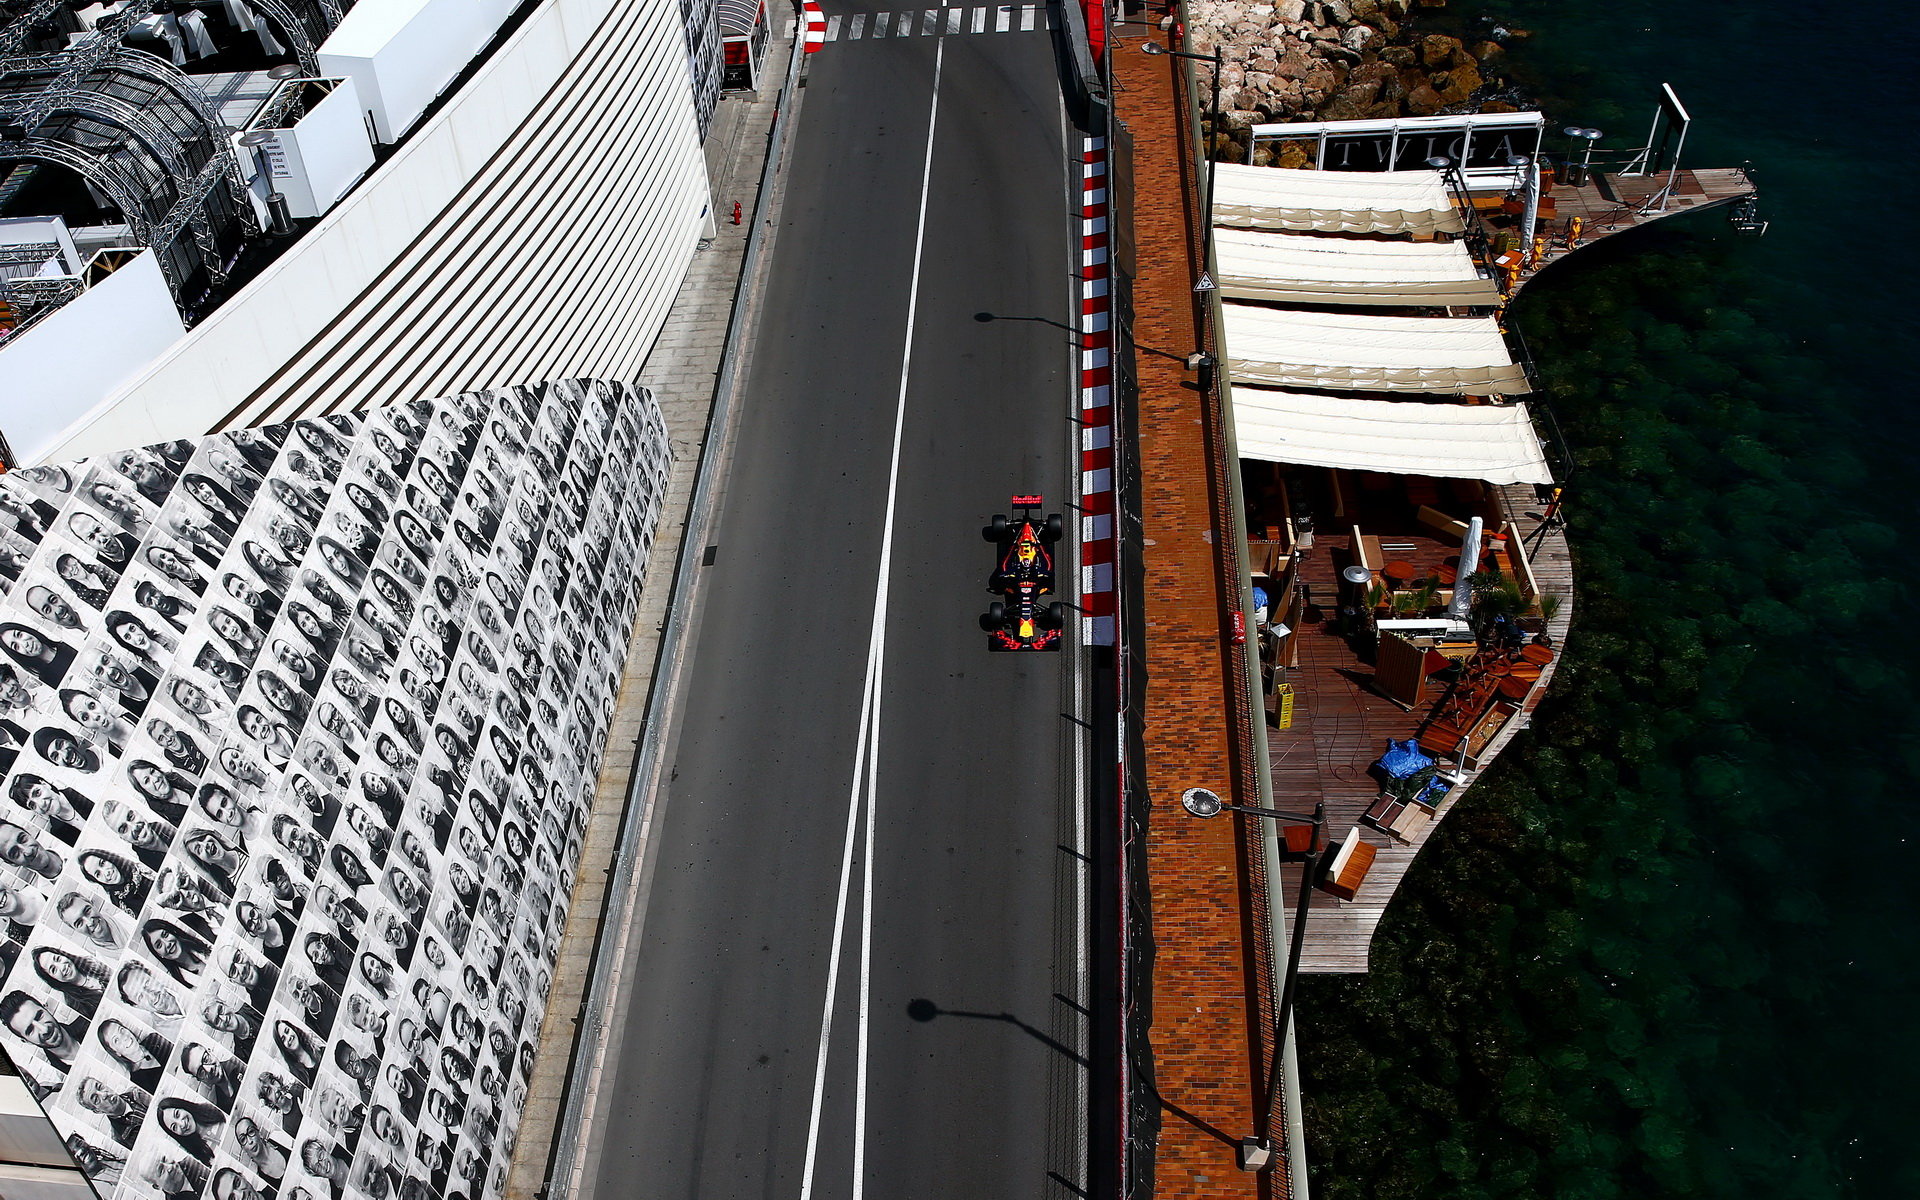 Max Verstappen při kvalifikaci v Monaku